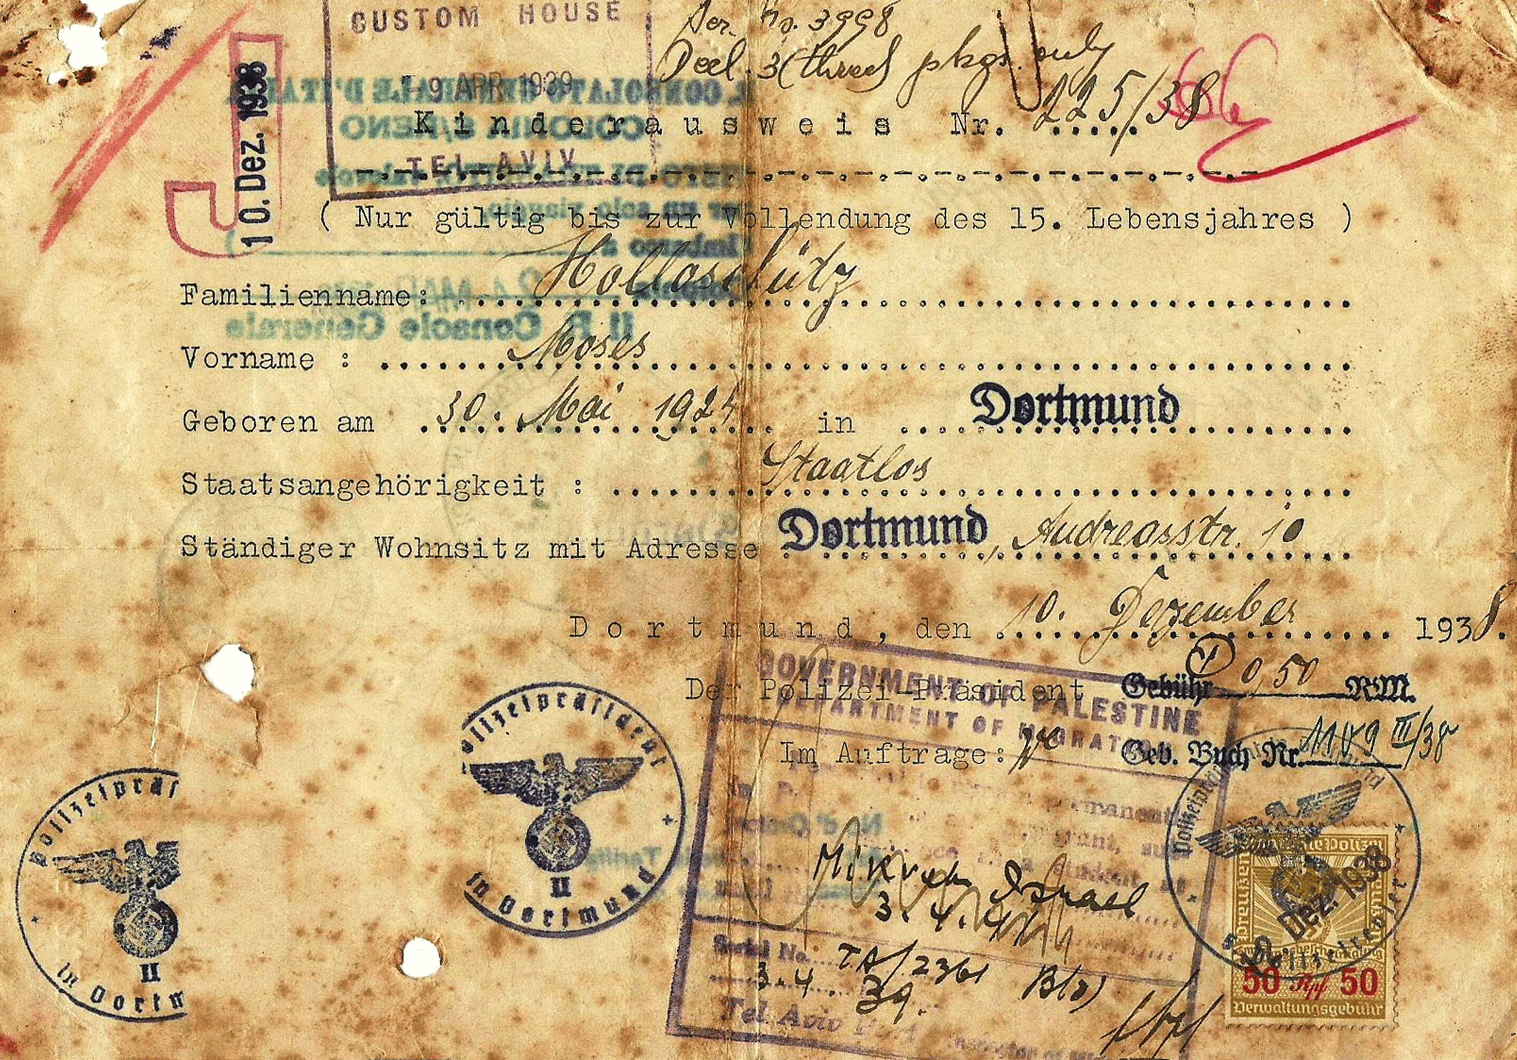 J stamped Jewish travel document for children